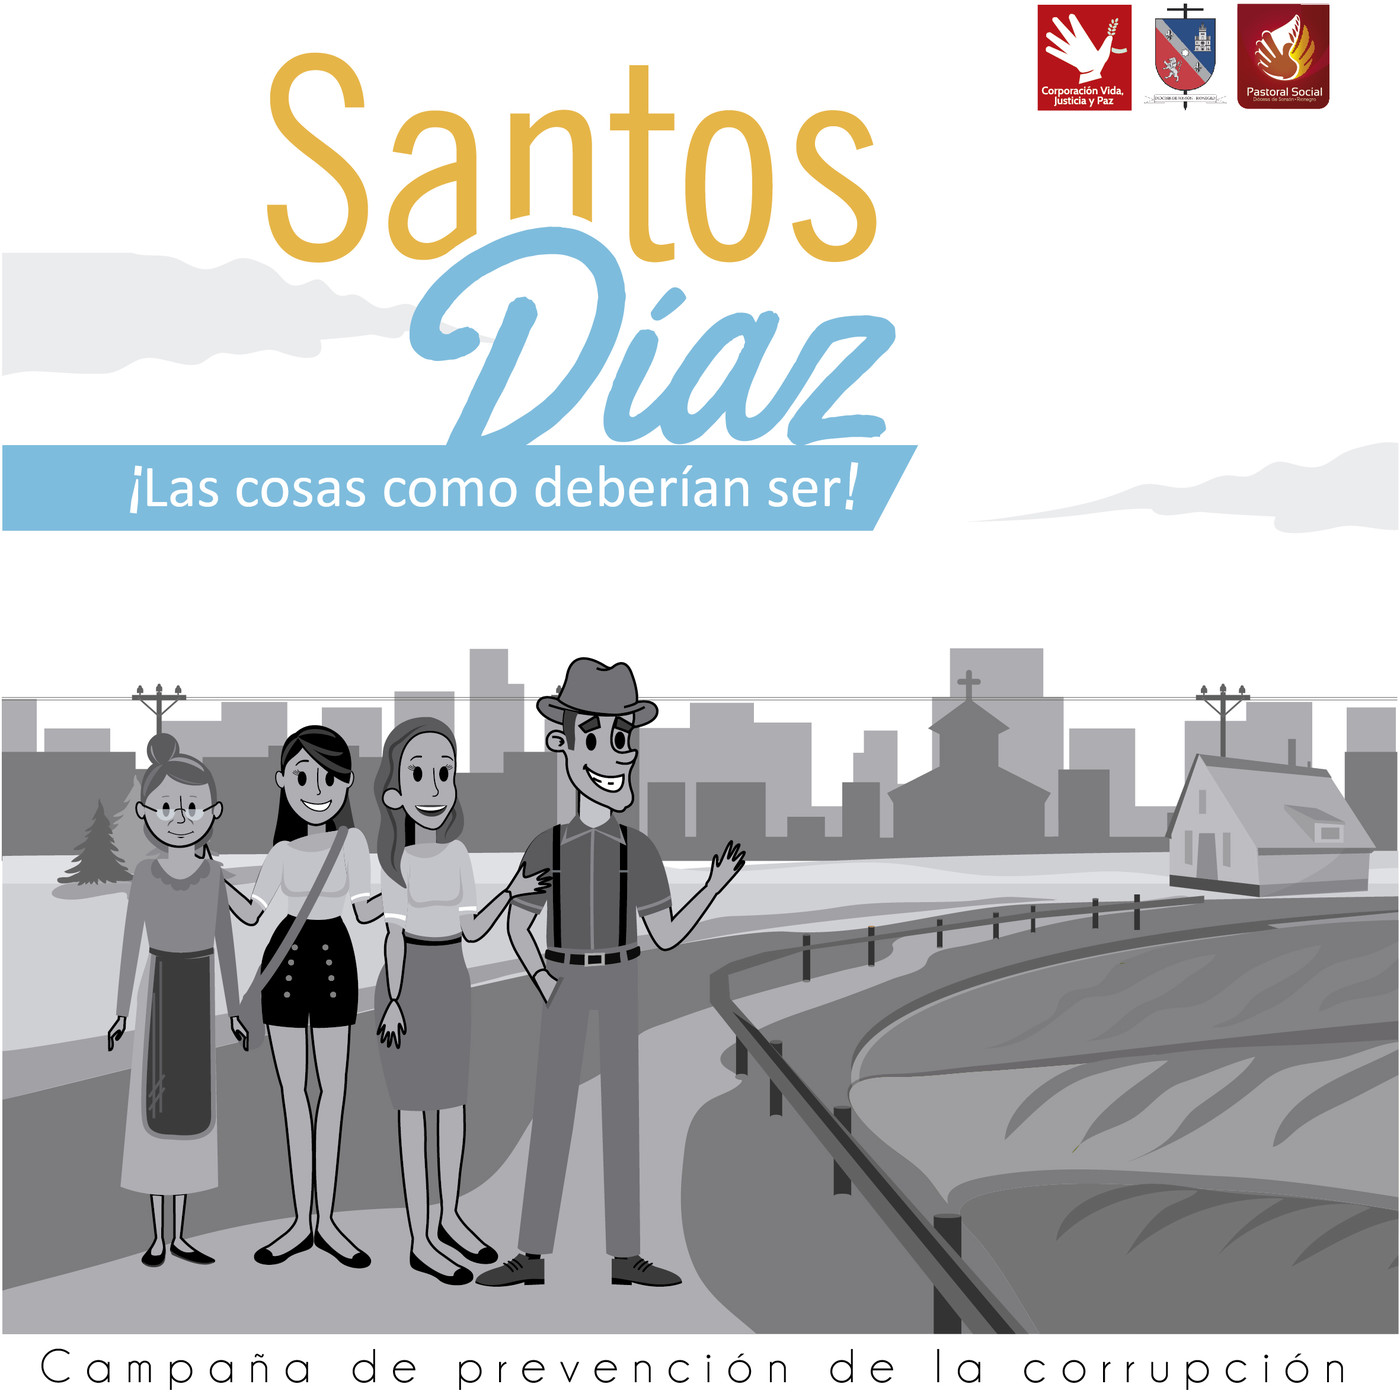 Campaña Historias de los Santos Diaz 2019 - Día 1